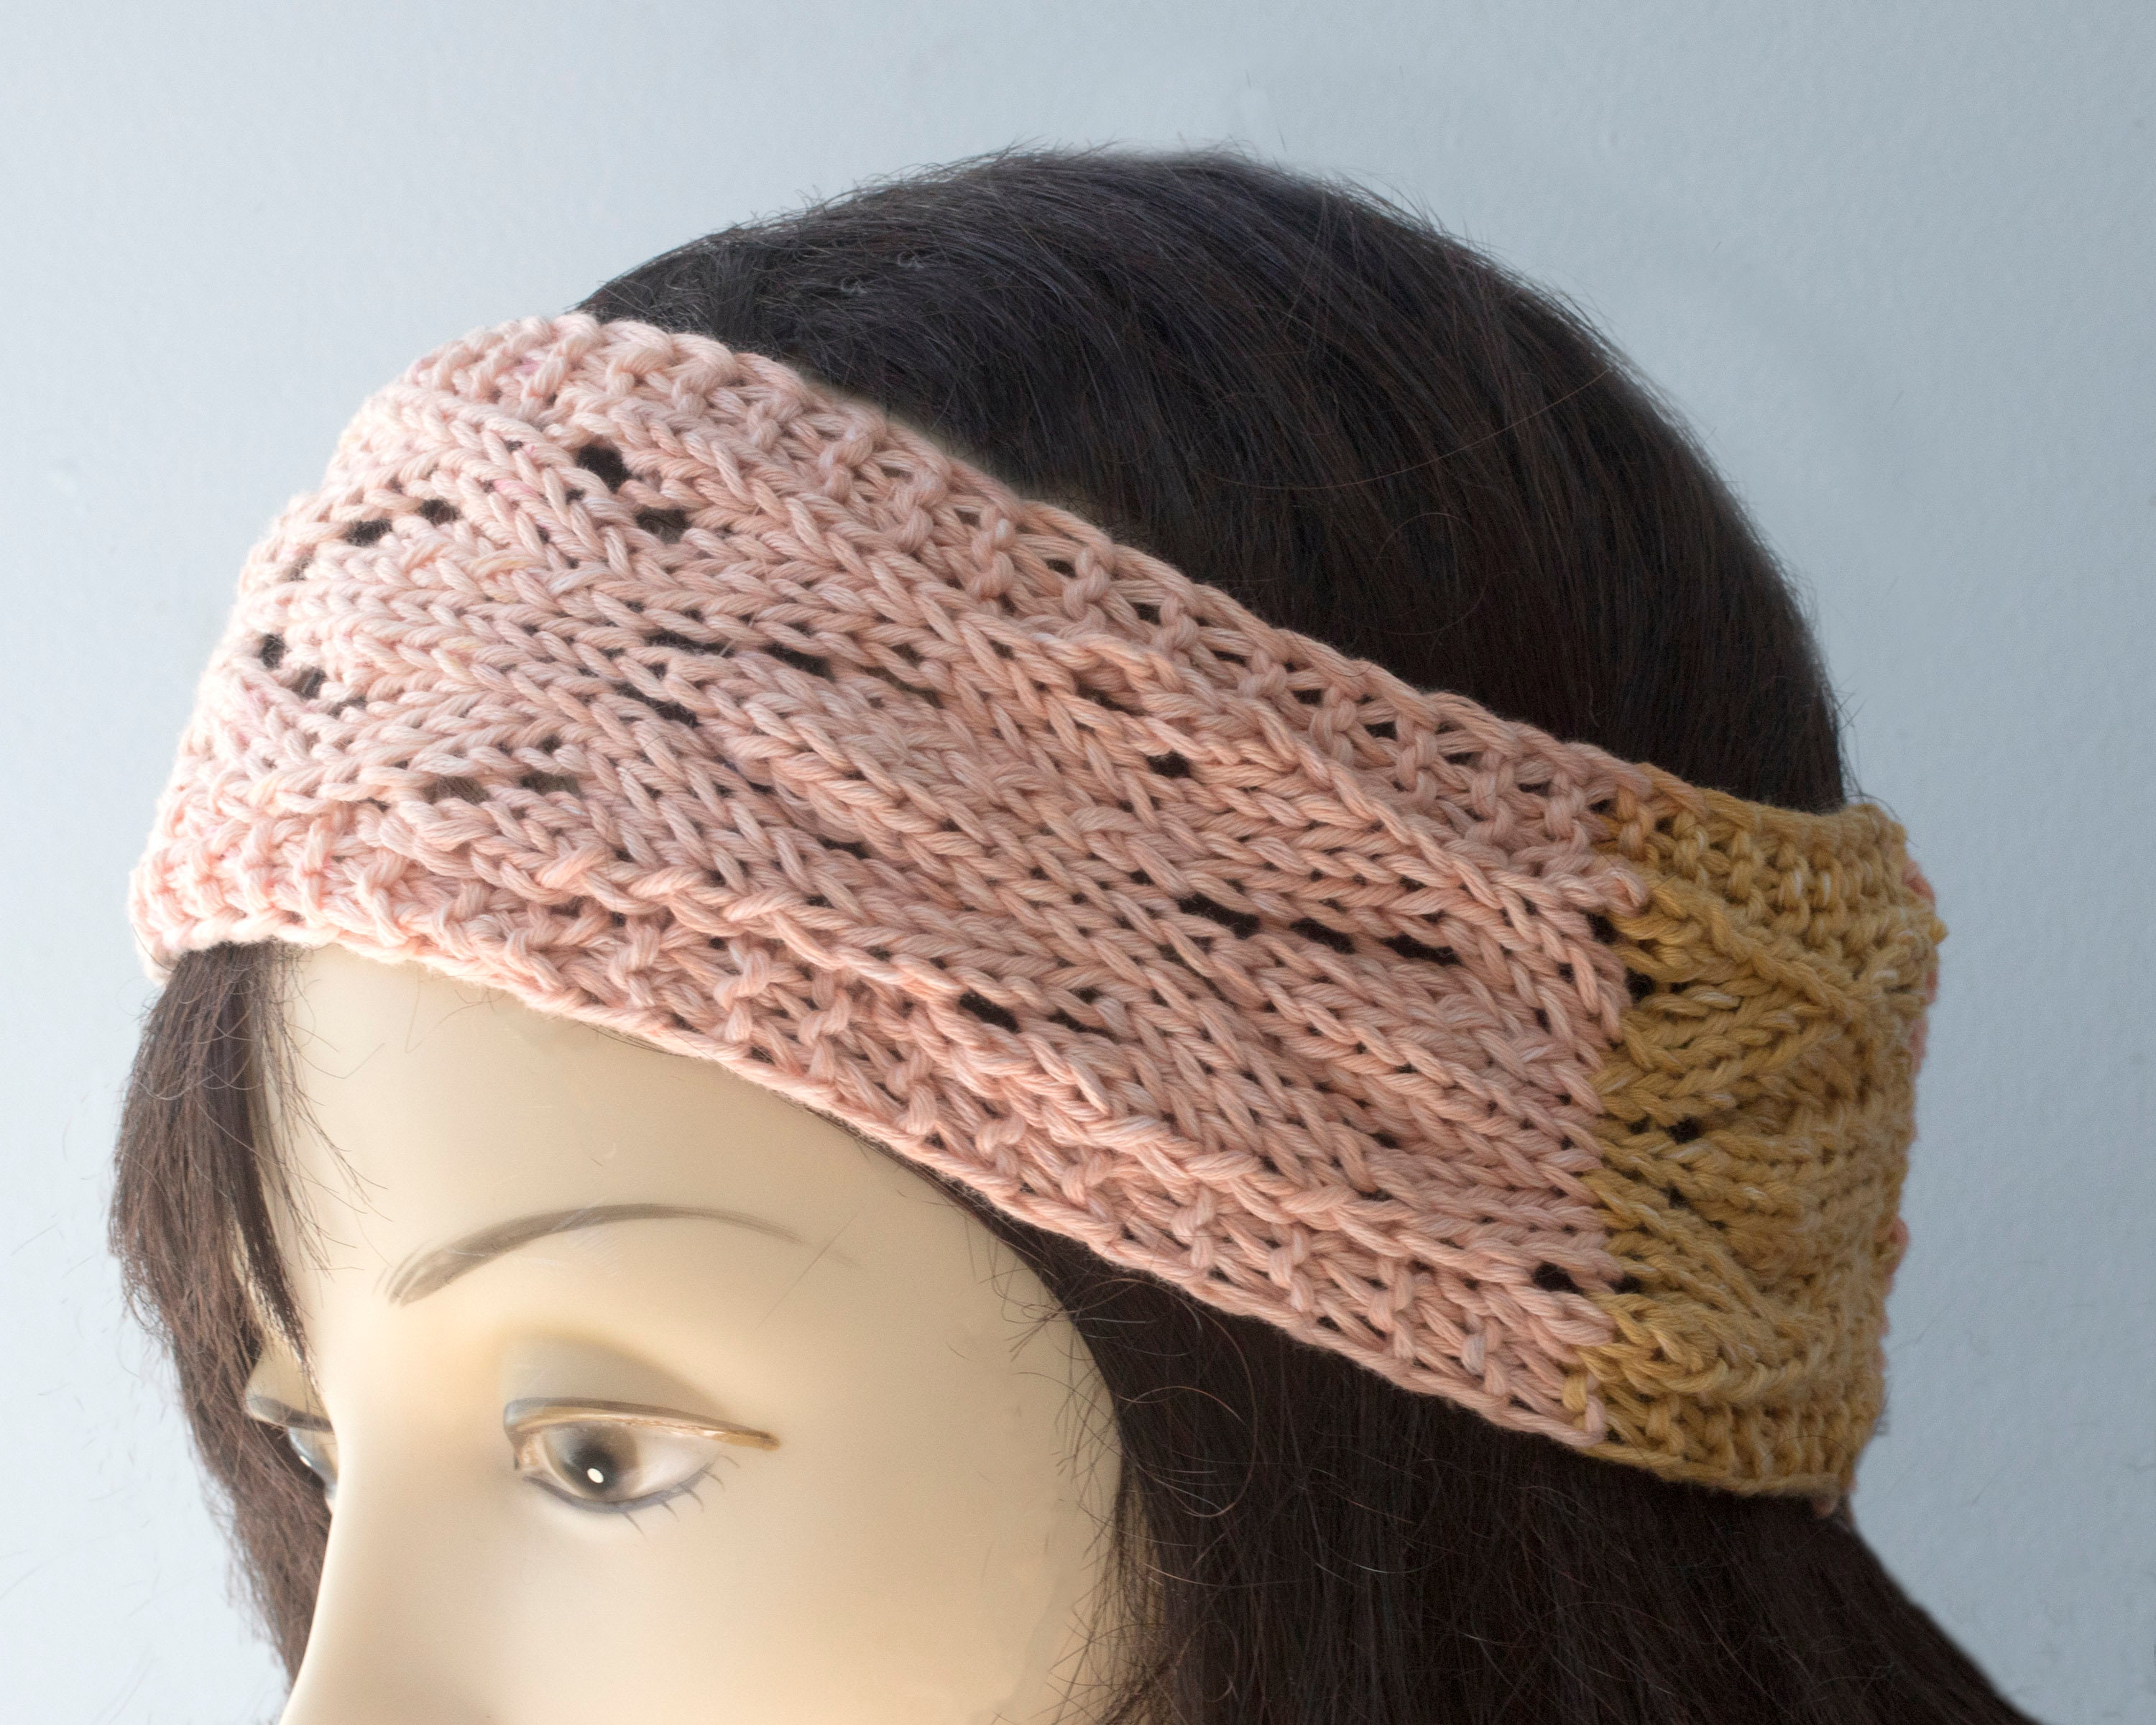 T-shirt yarn headband knitting pattern - Akamatra